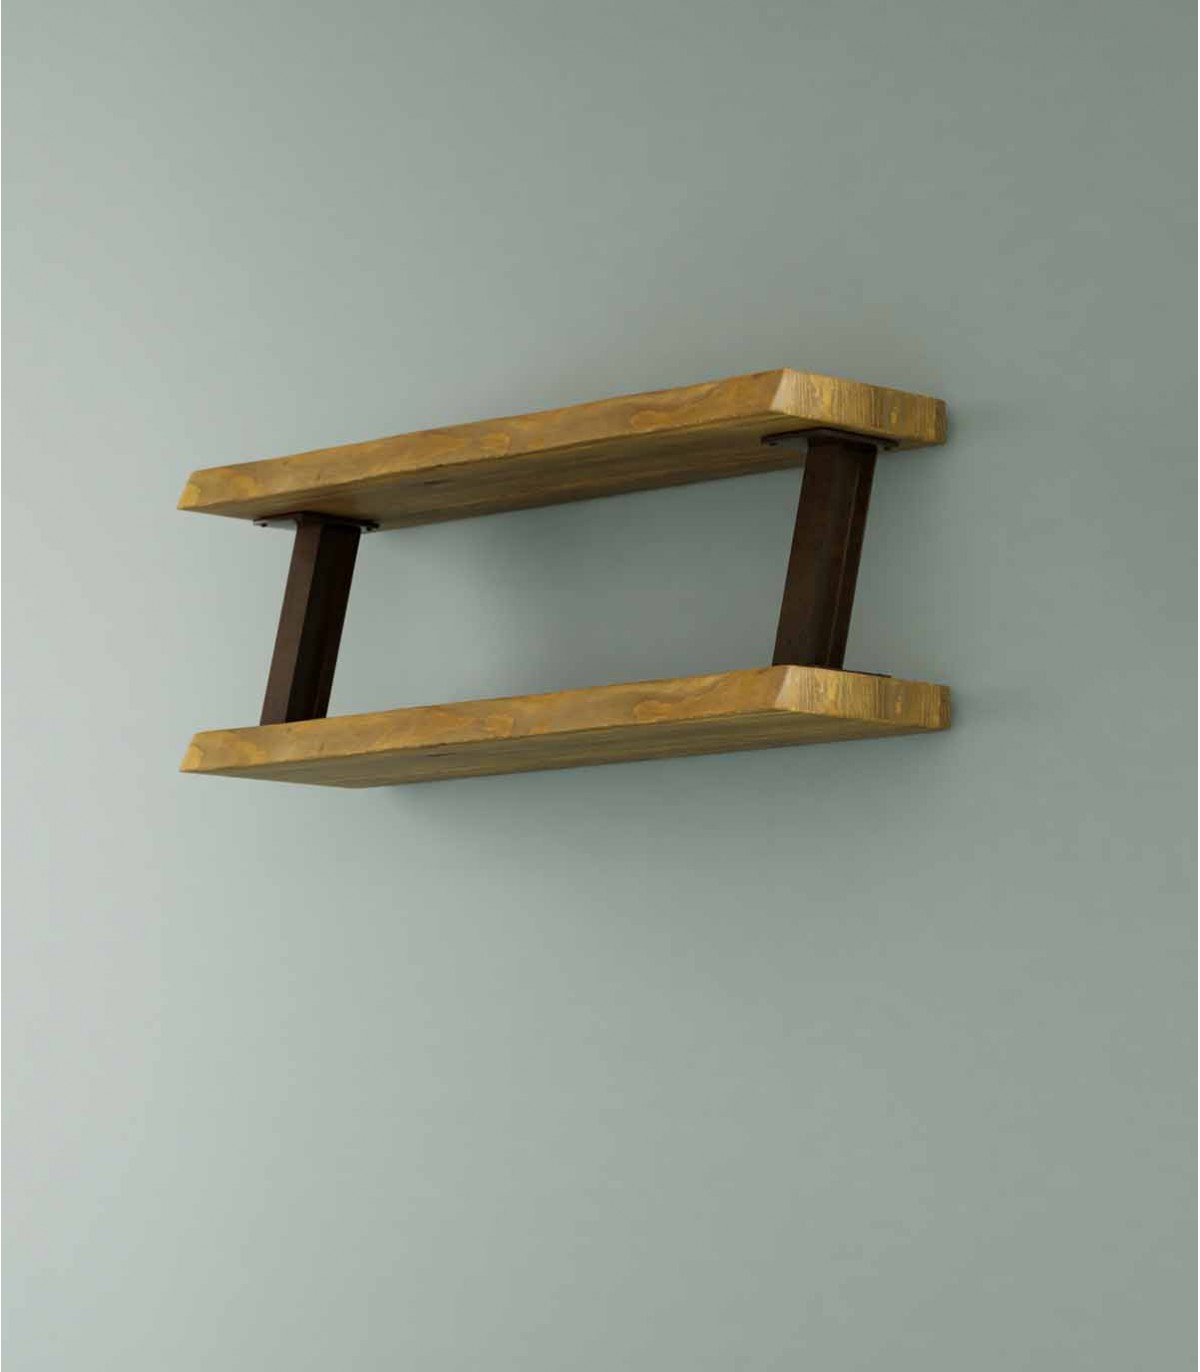 https://www.decoracionbeltran.com/61596-superlarge_default/estante-de-madera-y-metal-de-estilo-industrial-zout.jpg